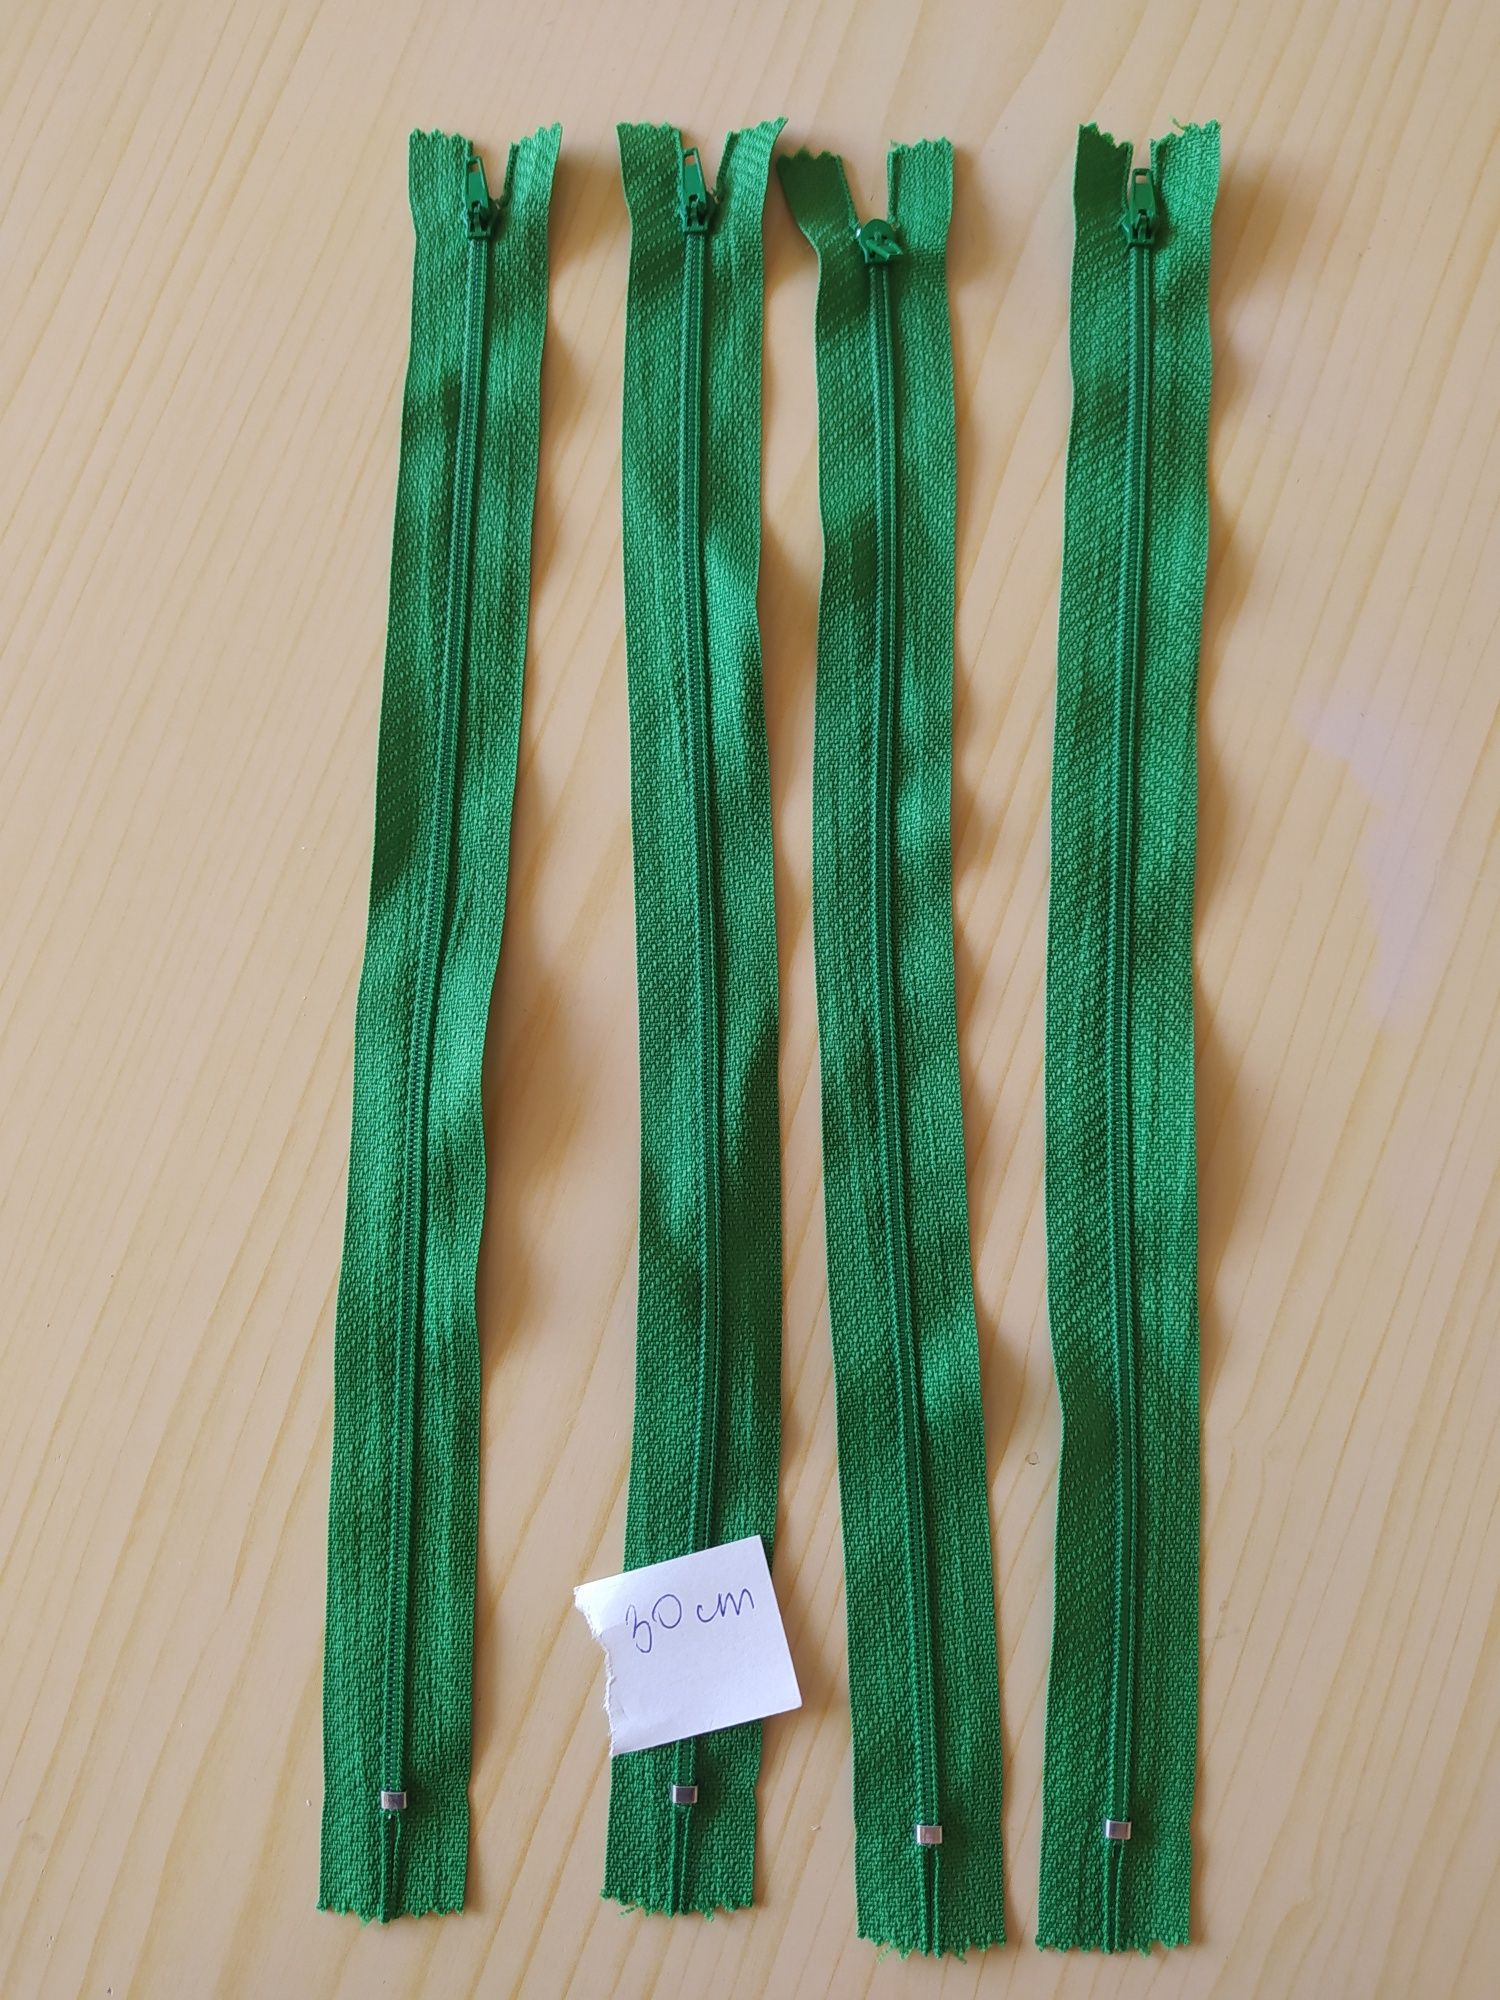 Zamki 30 cm, zielone